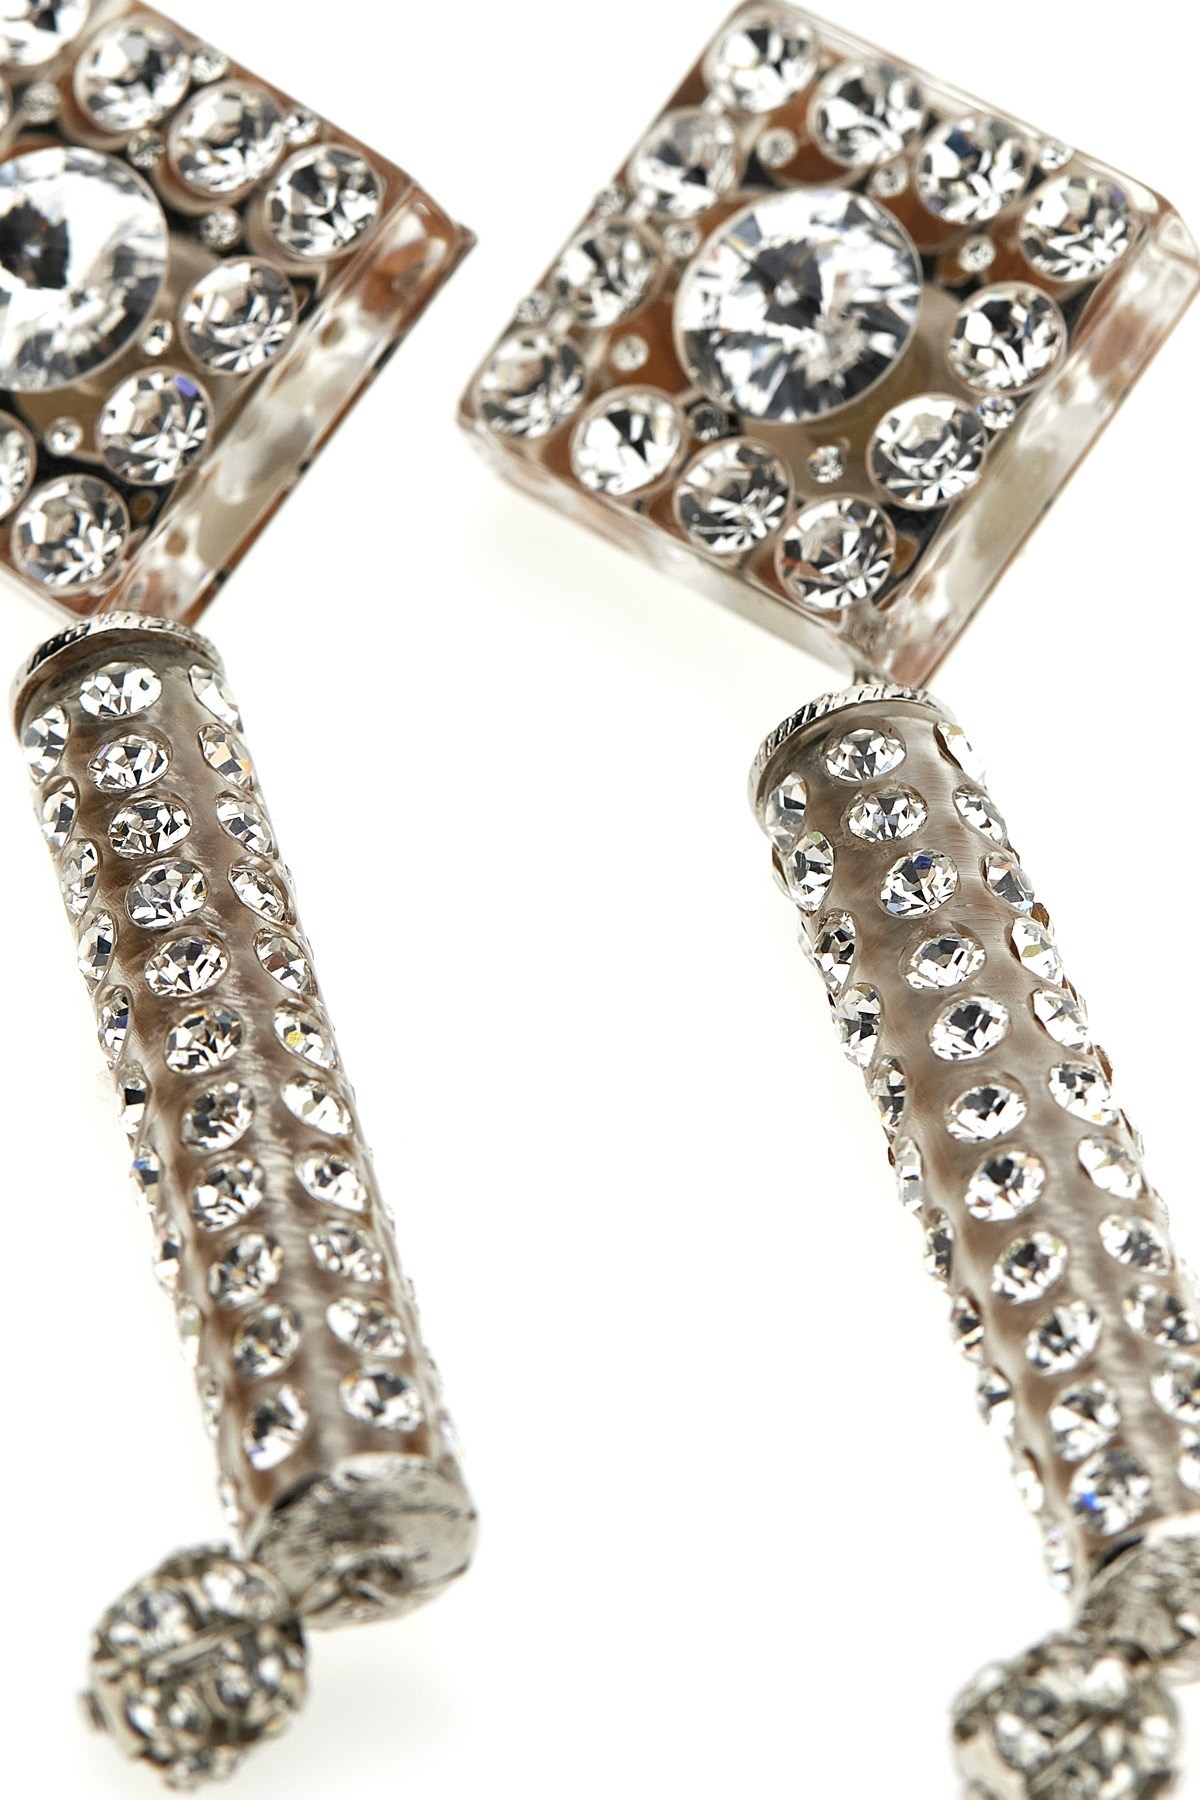 Crystal earrings - 4